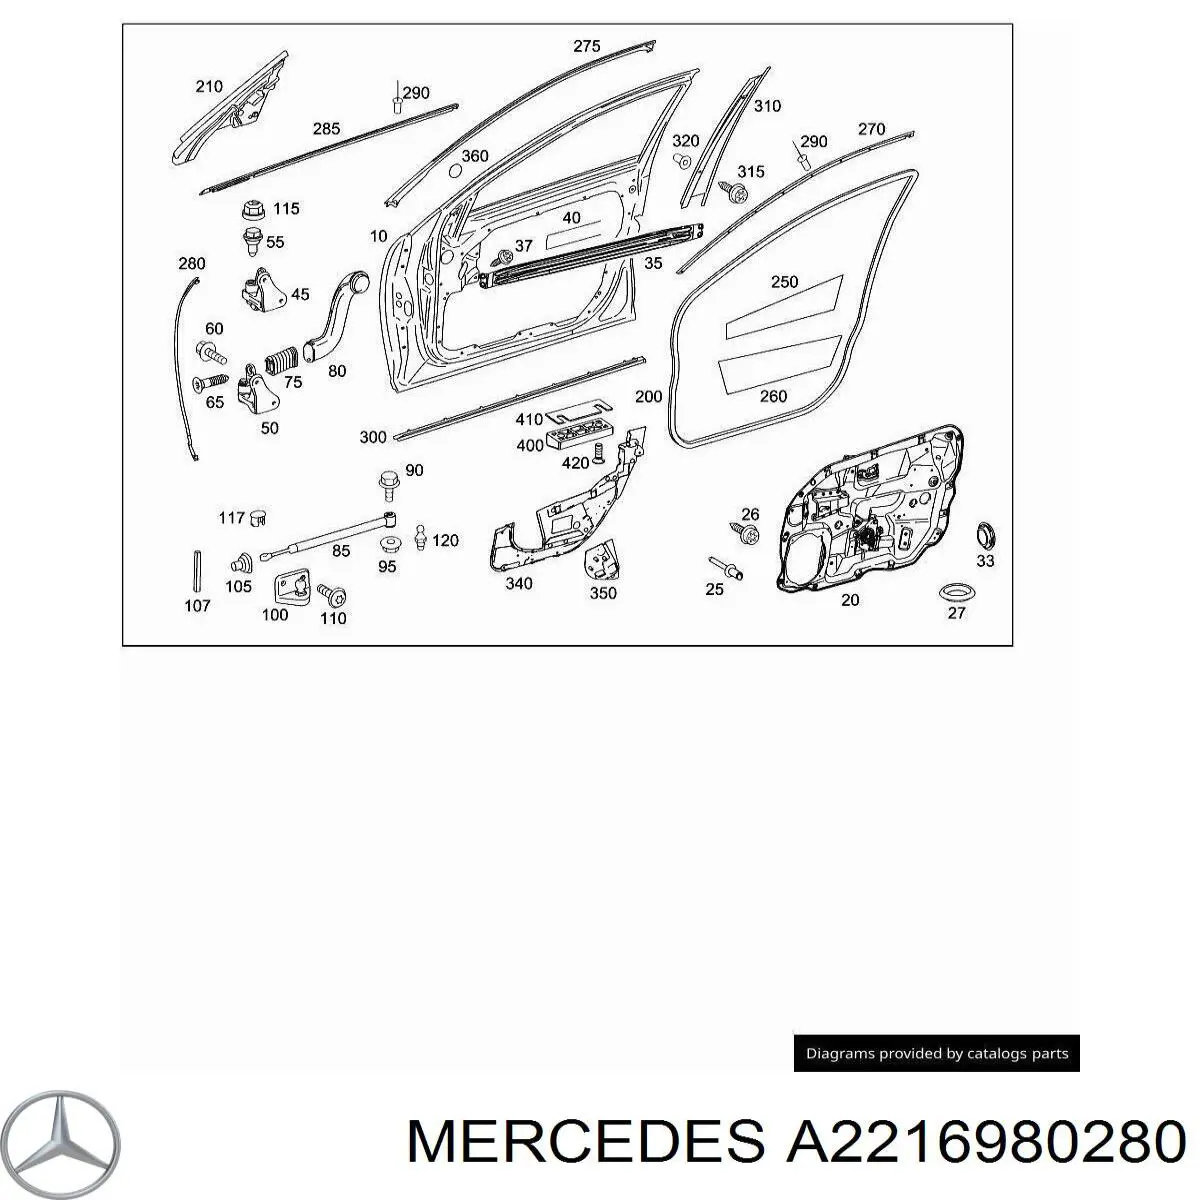 A2216980280 Mercedes moldura de puerta delantera derecha superior